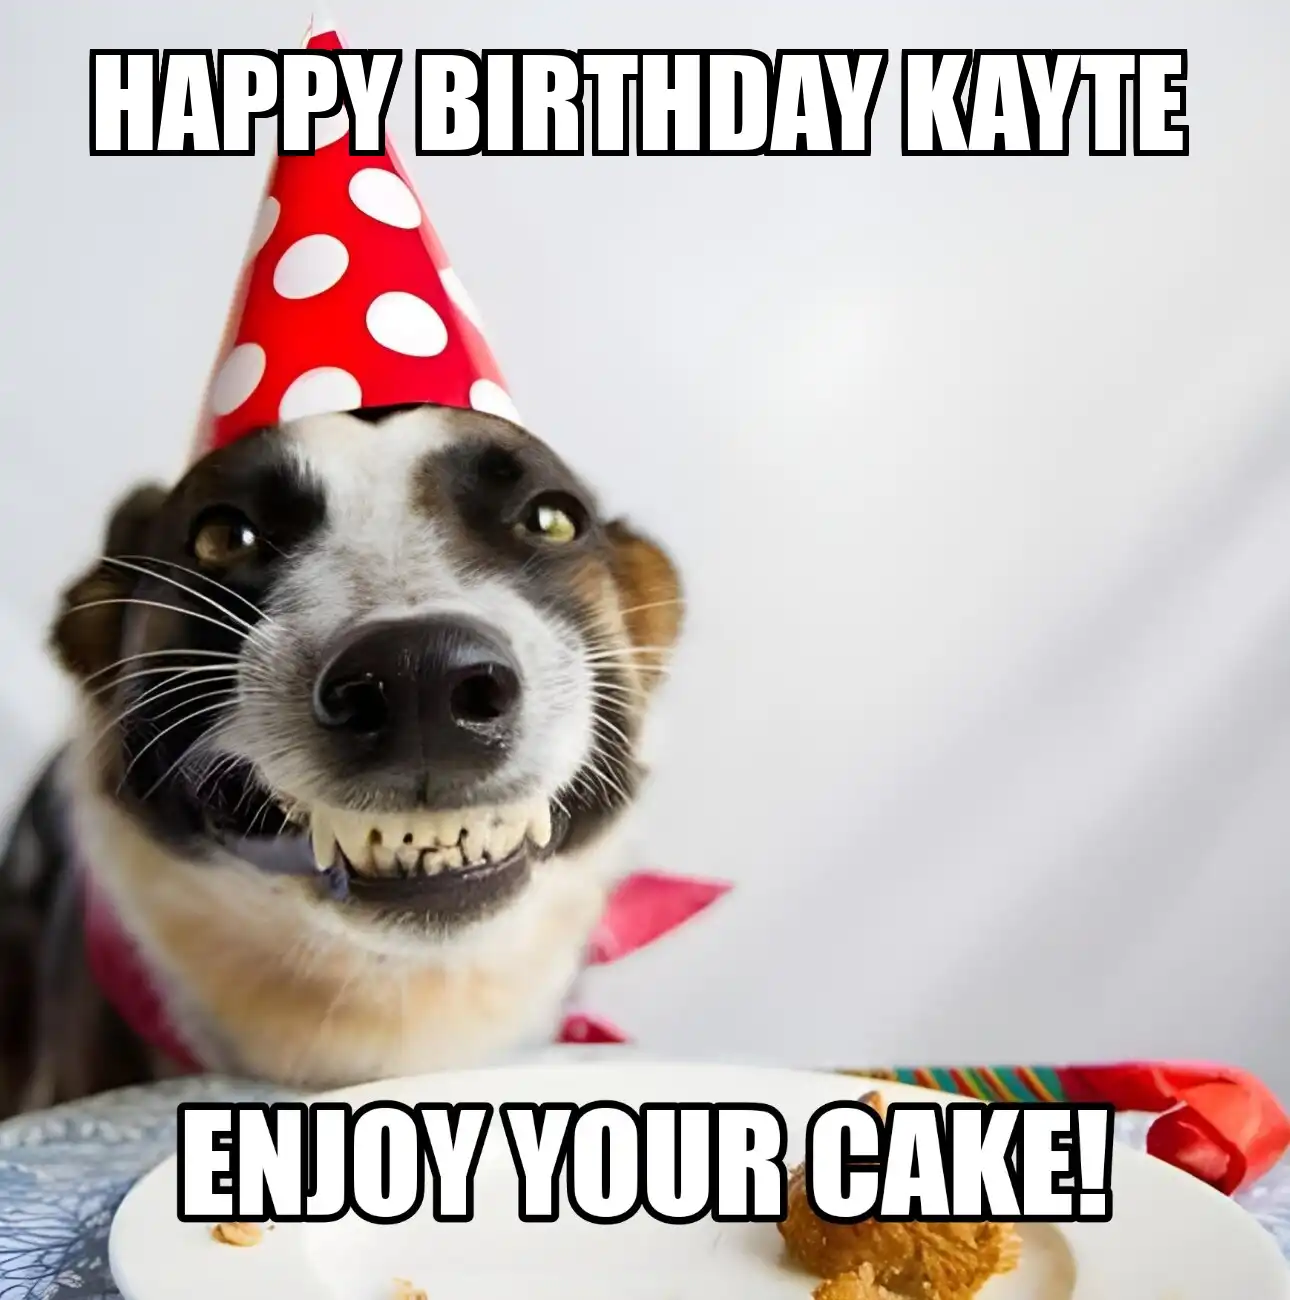 Happy Birthday Kayte Enjoy Your Cake Dog Meme